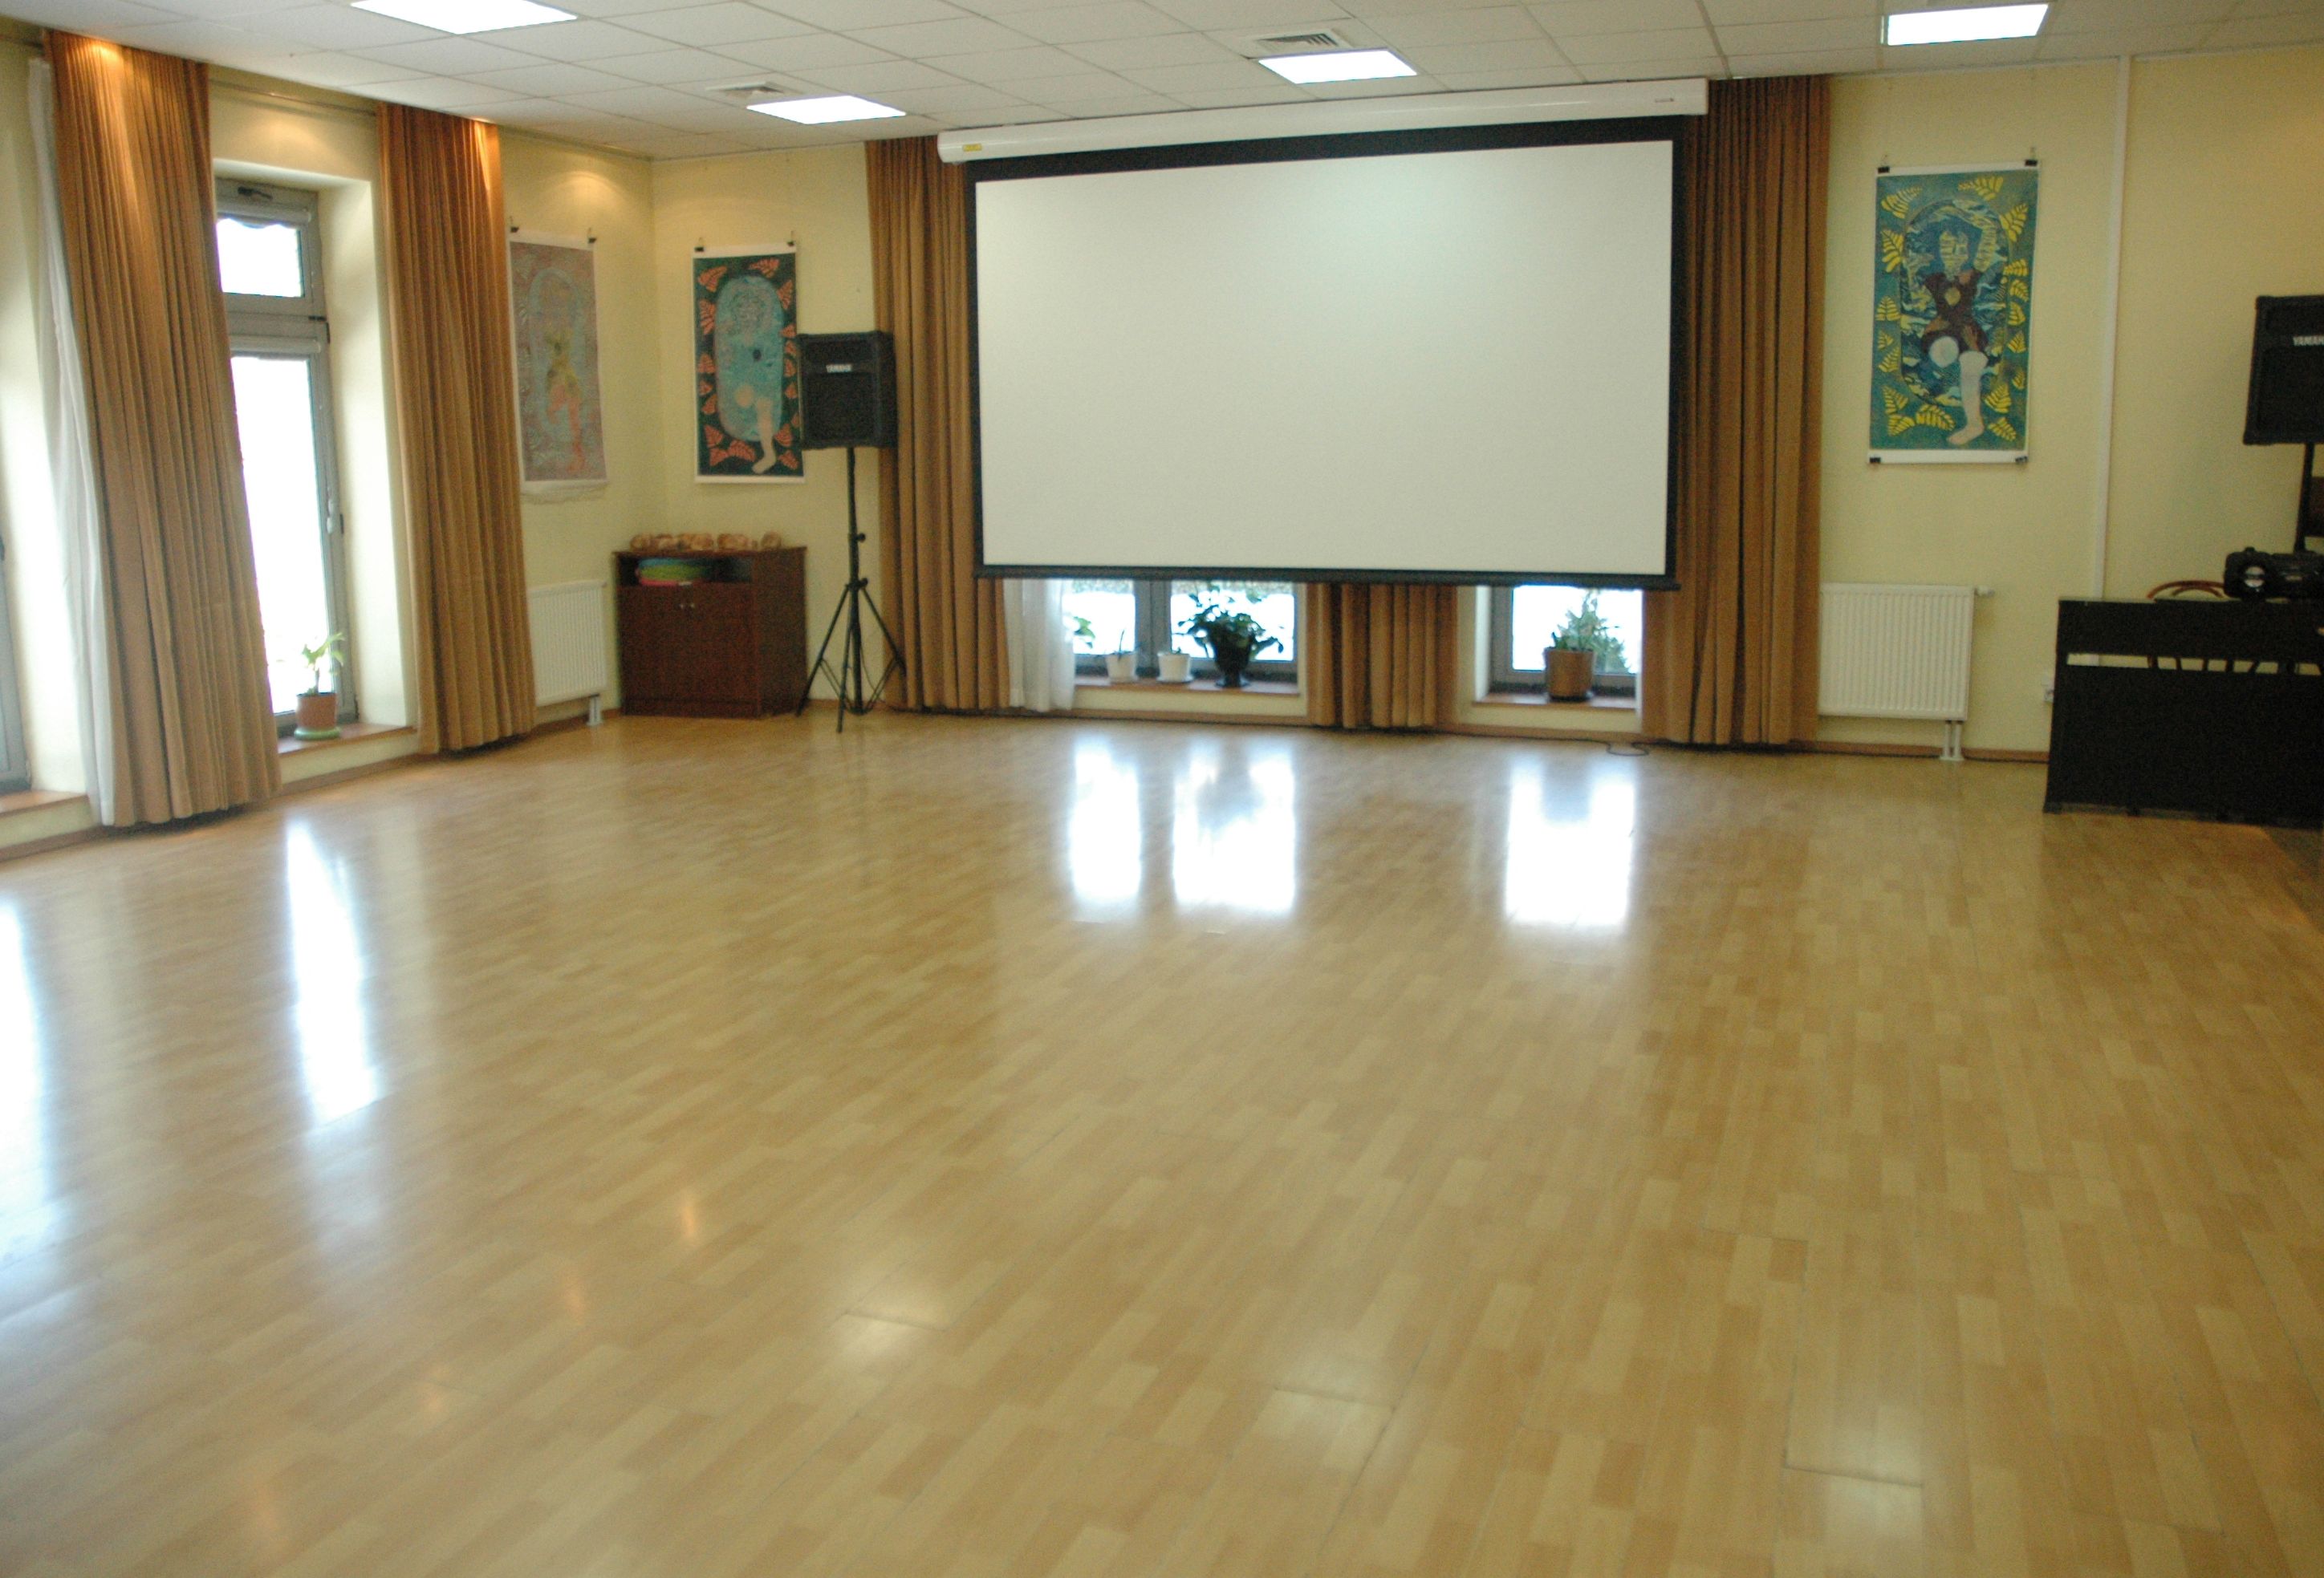 Duża sala z rozwijanym ekranem do projekcji.